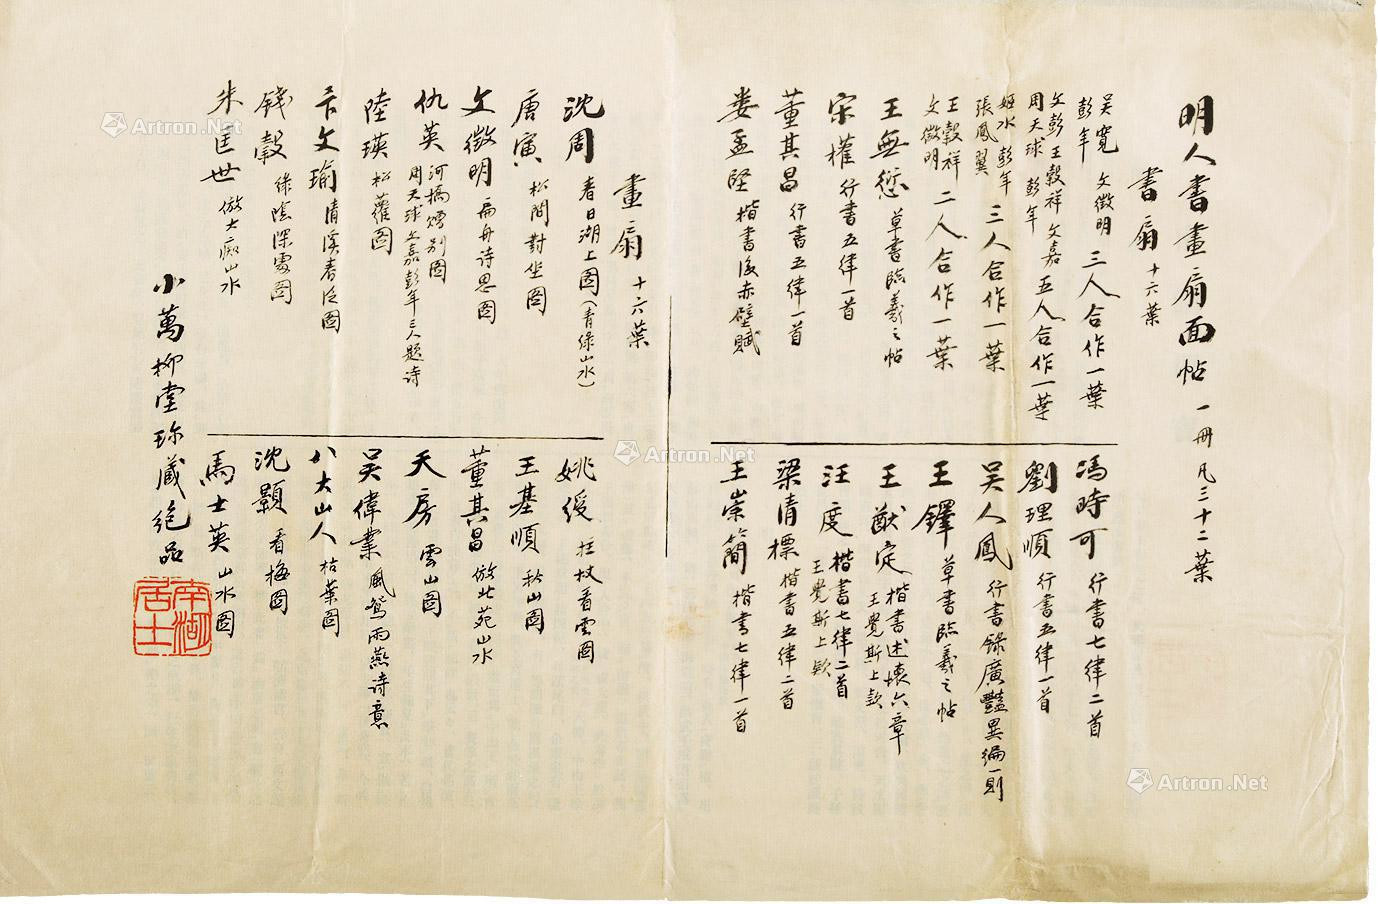 One page of handwritten“little wan liu tang treasures”by Lian quan